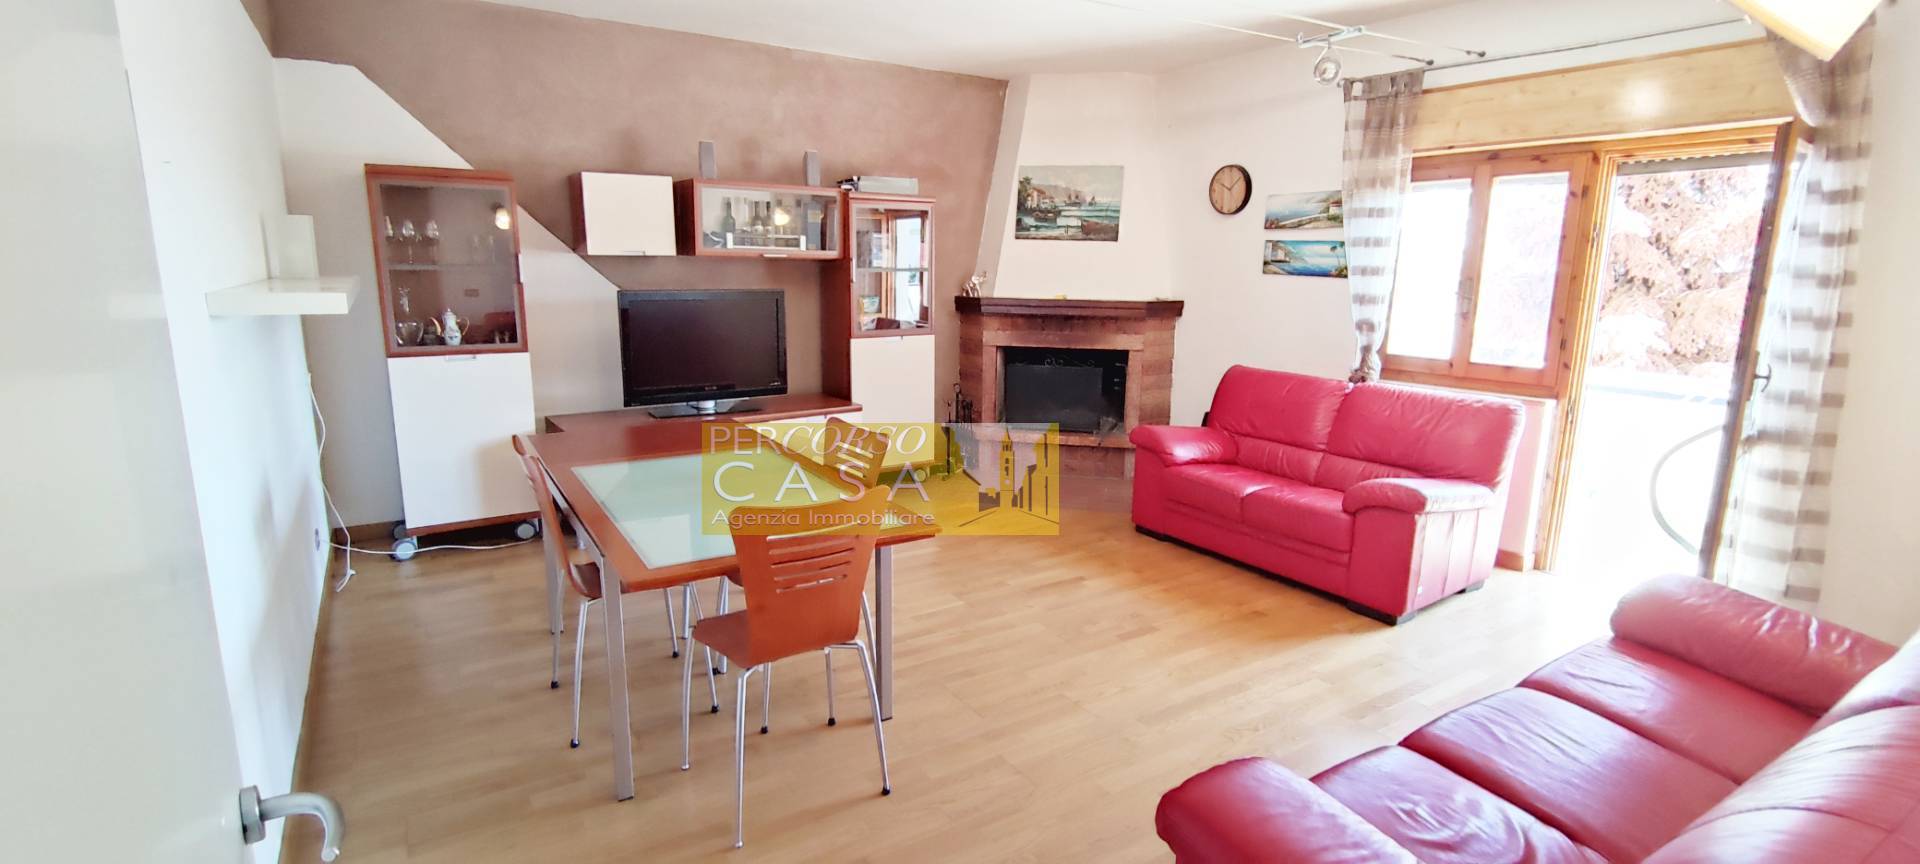 Appartamento in vendita a Teramo, 5 locali, zona Località: ZonaCastello, prezzo € 140.000 | PortaleAgenzieImmobiliari.it